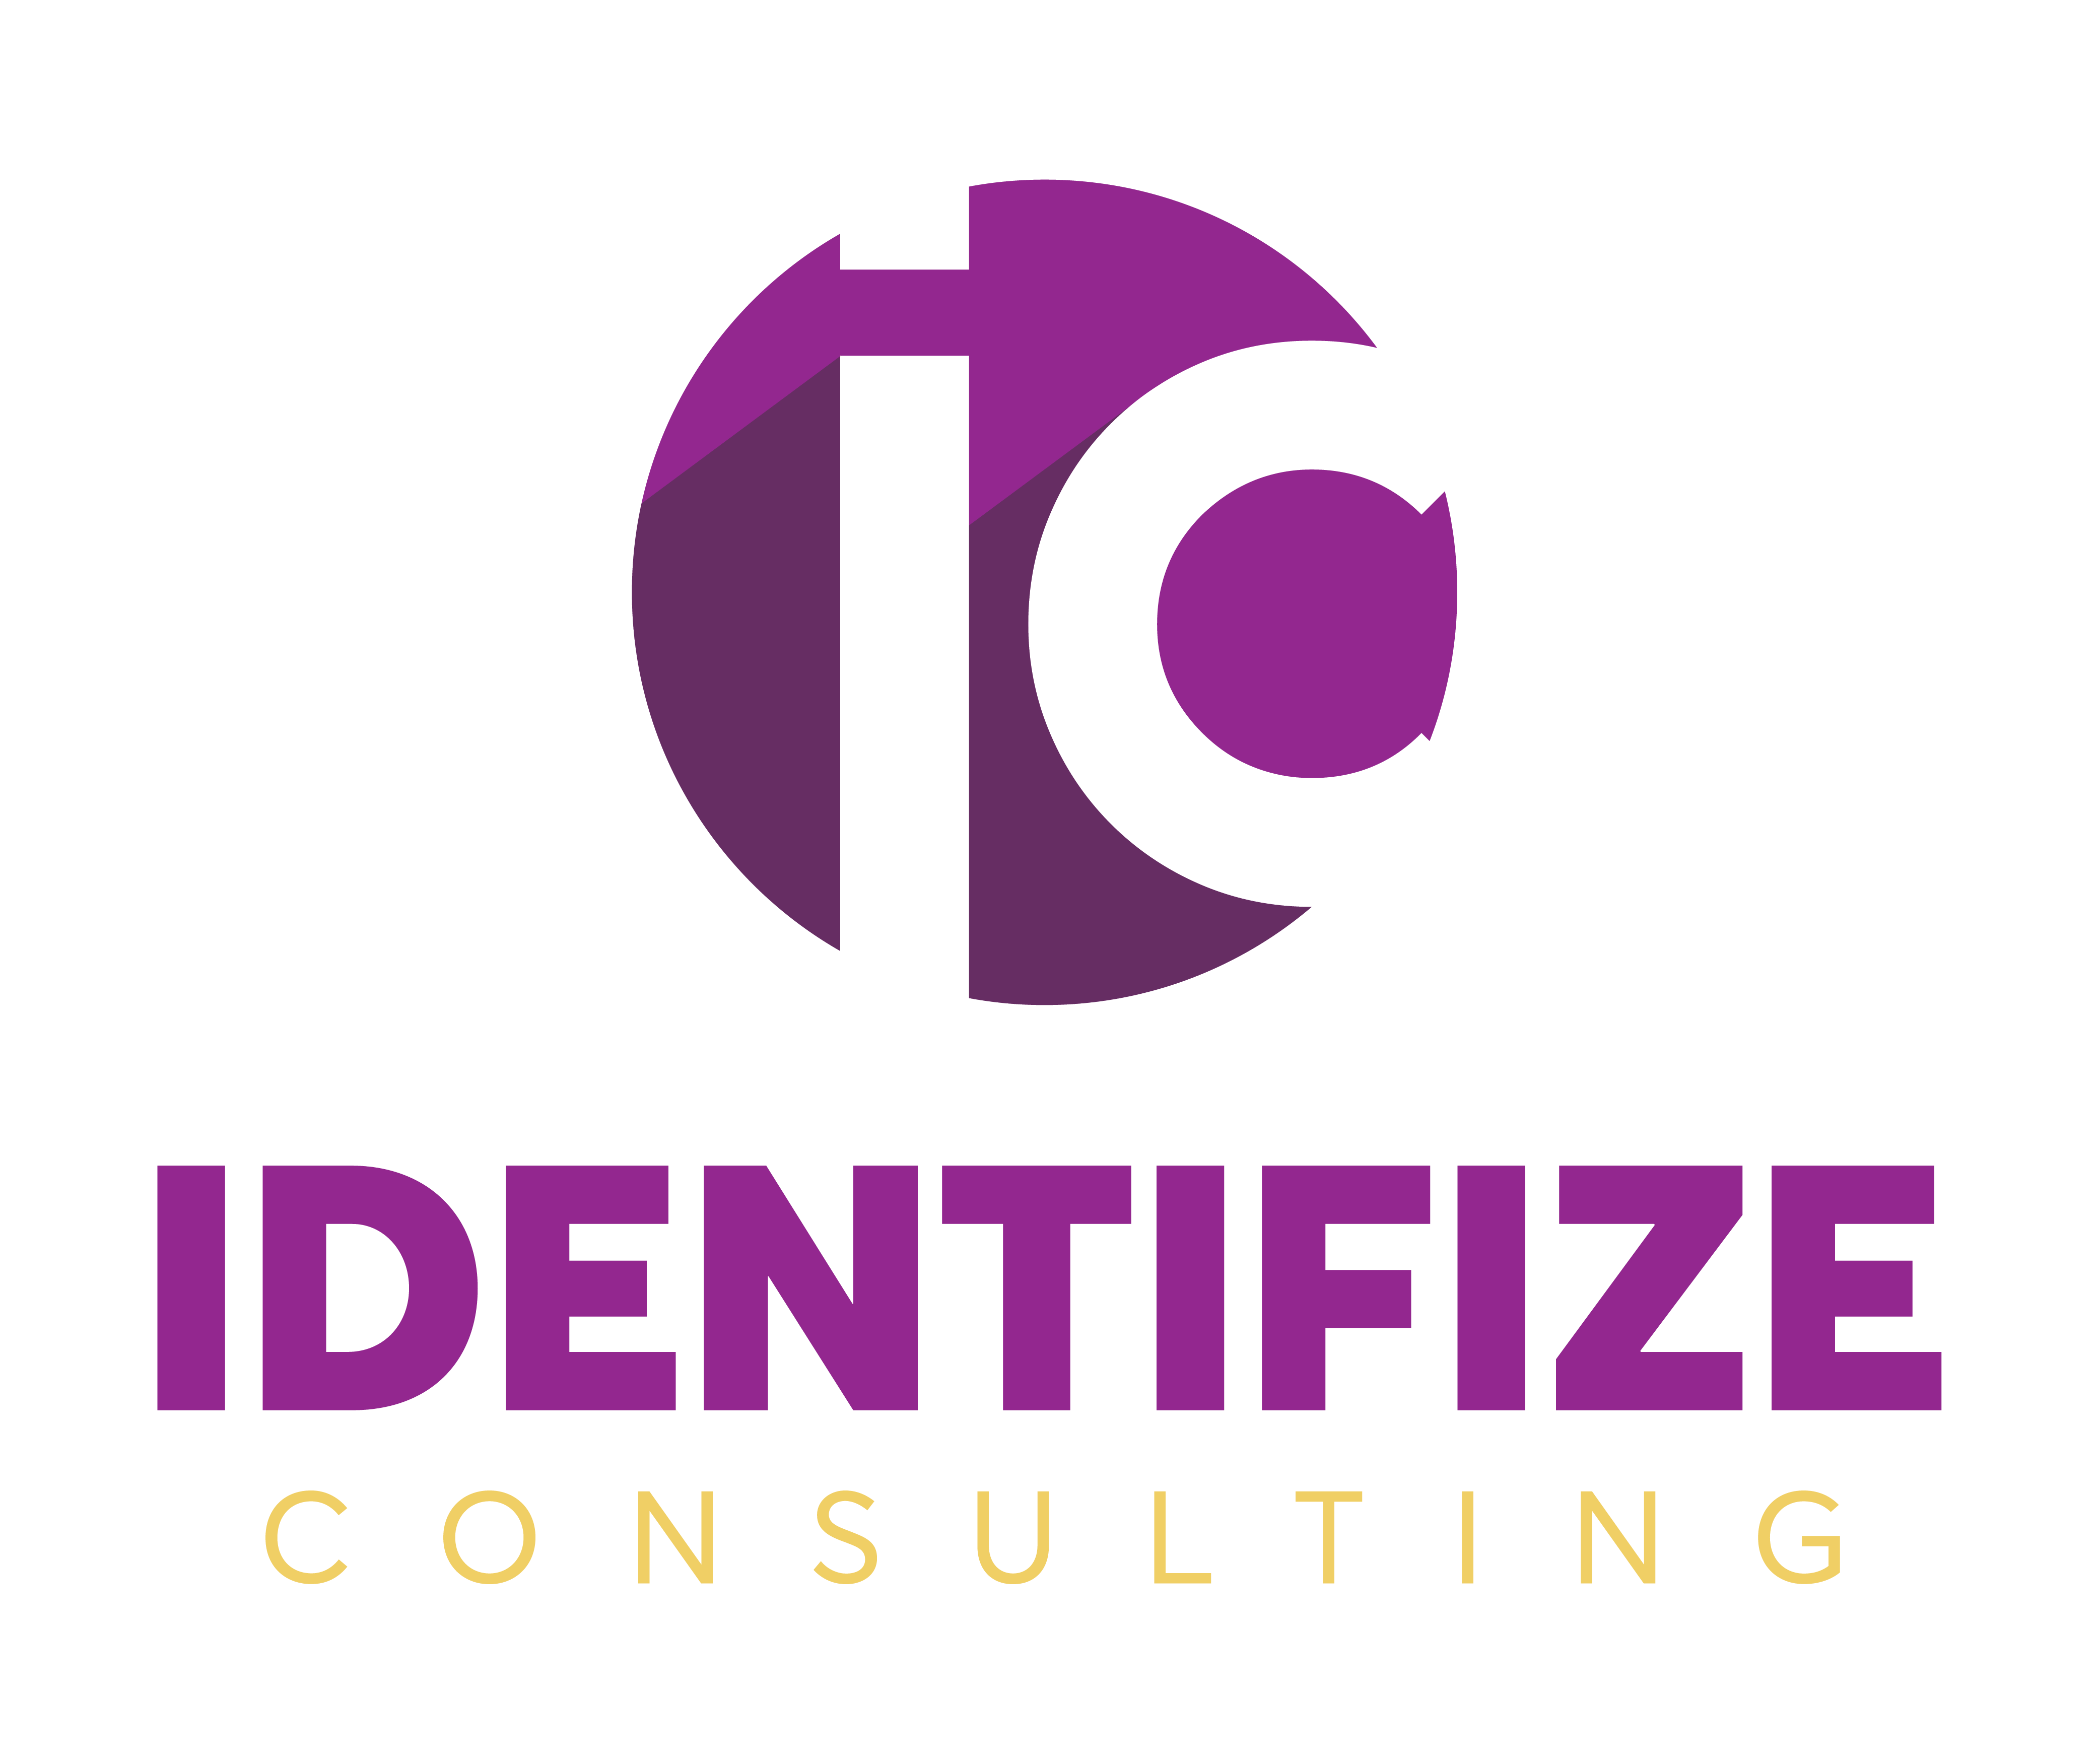 Identifize Consulting